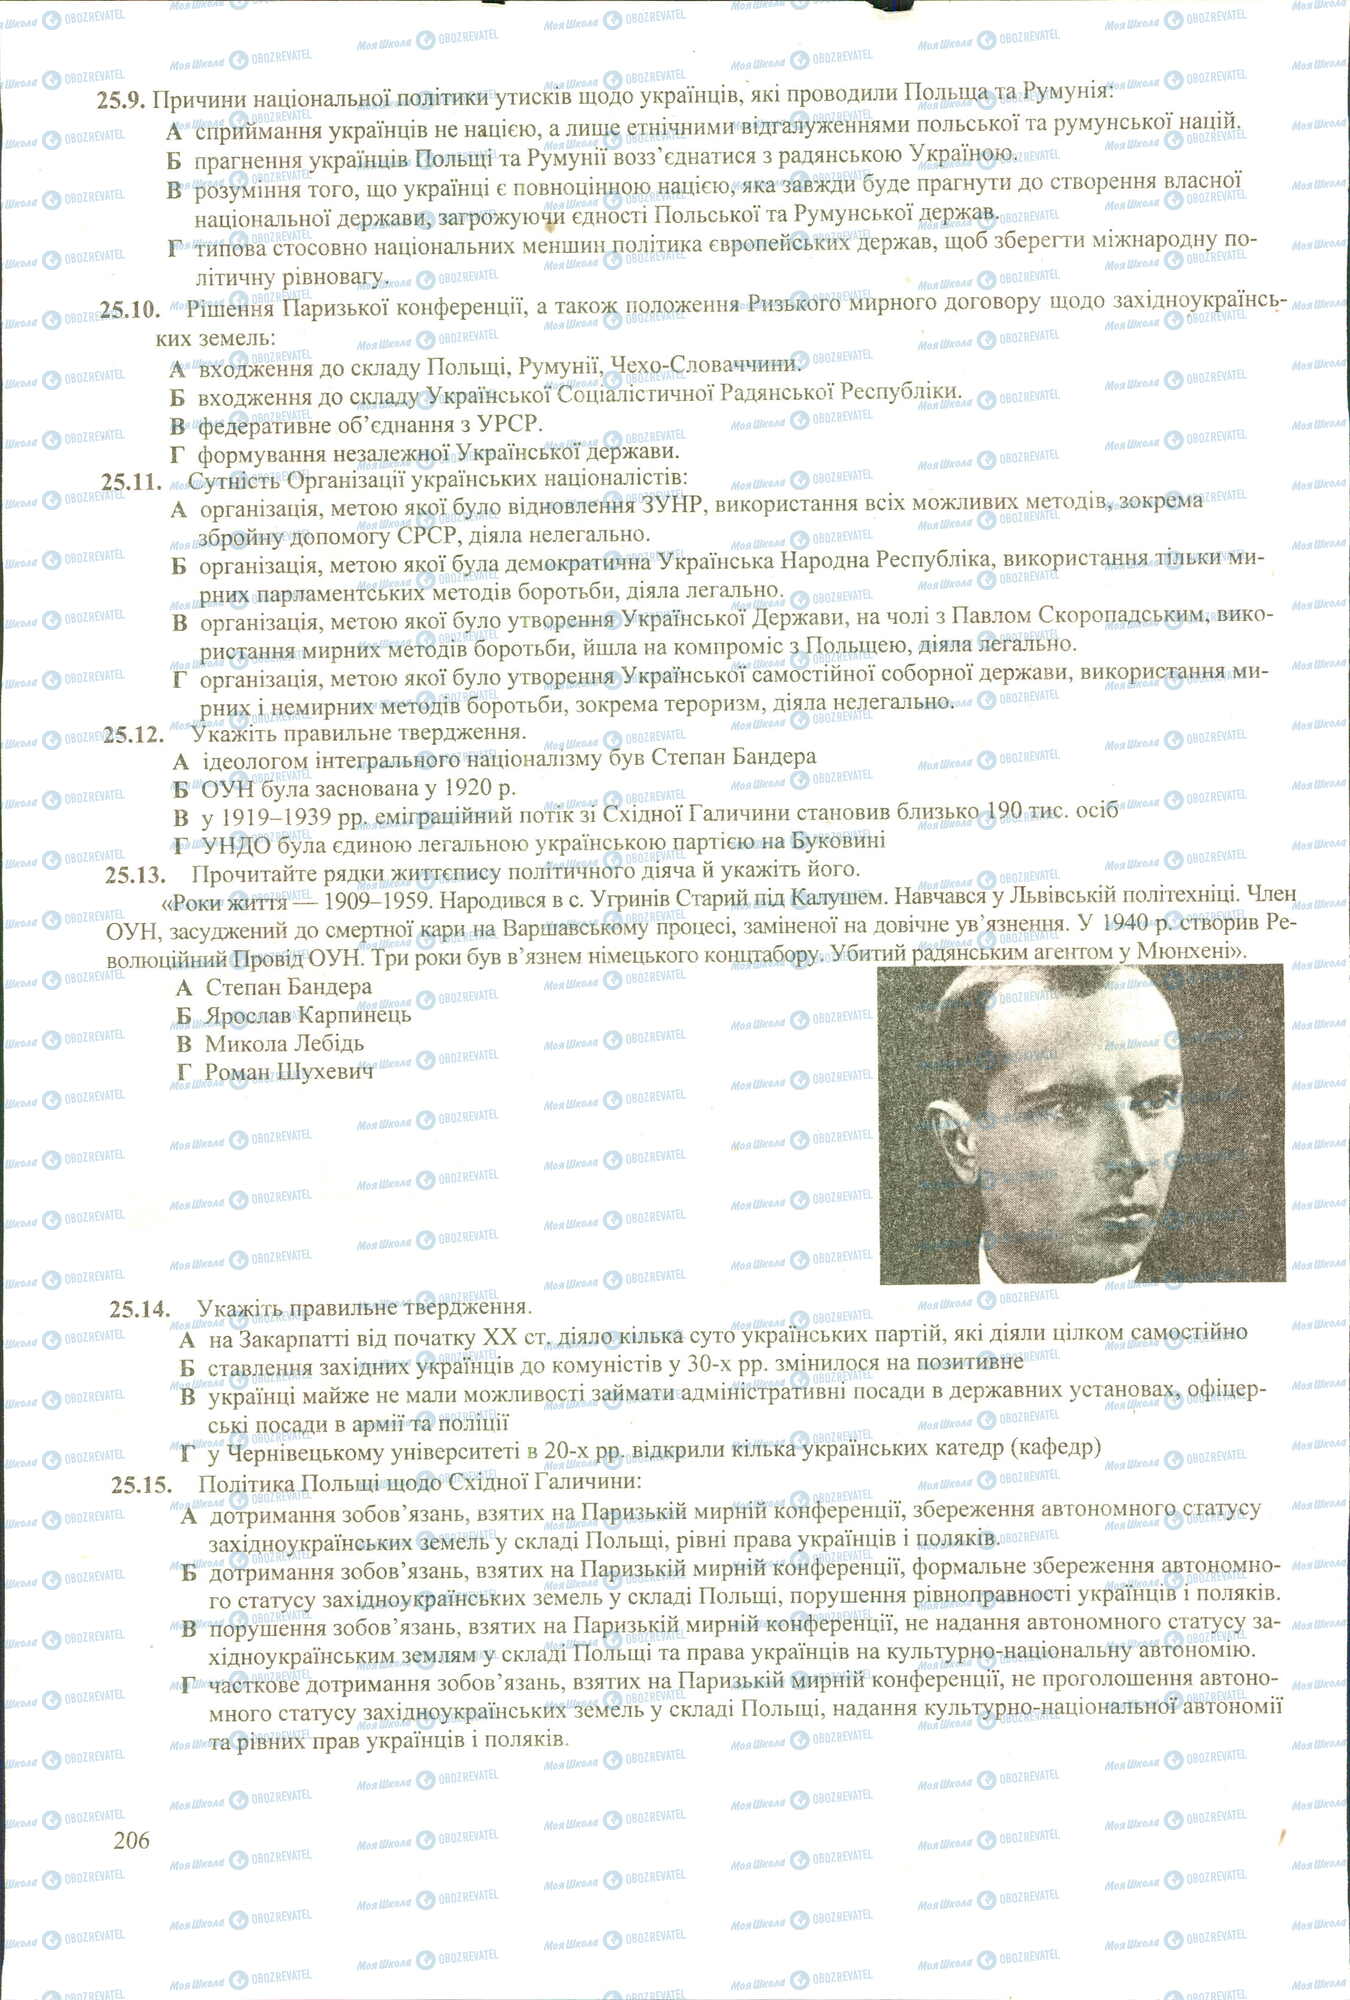 ЗНО История Украины 11 класс страница 9-15